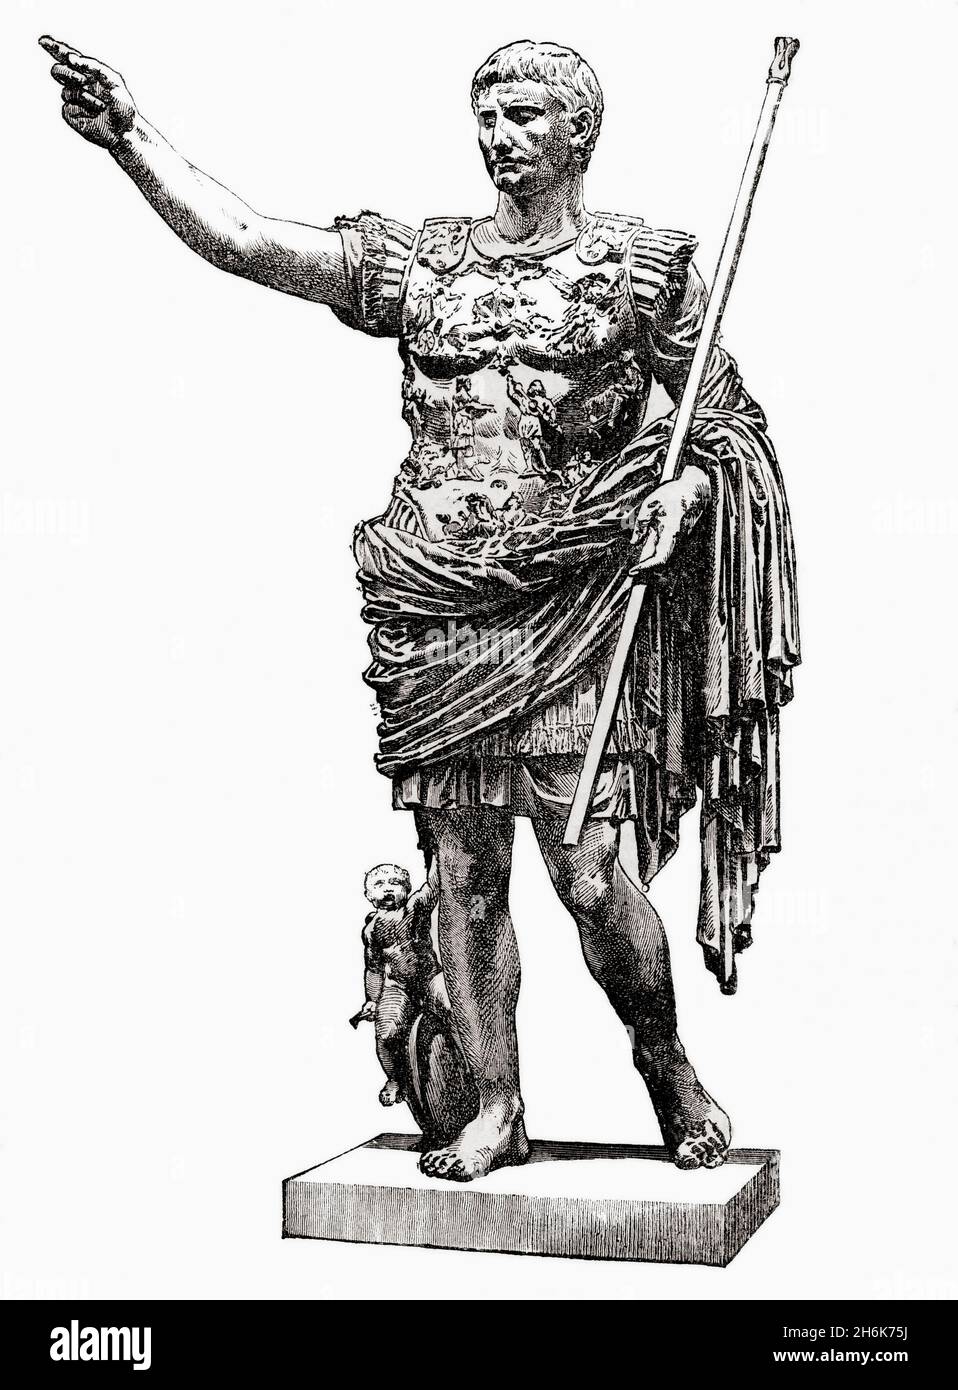 César Augustus, 63 av. J.-C. – AD 14, alias Octavian.Premier empereur romain.Après Auguste de Prima Porta, une statue de portrait pleine longueur de César Augustus.De l'Histoire universelle illustrée de Cassell, publié en 1883. Banque D'Images